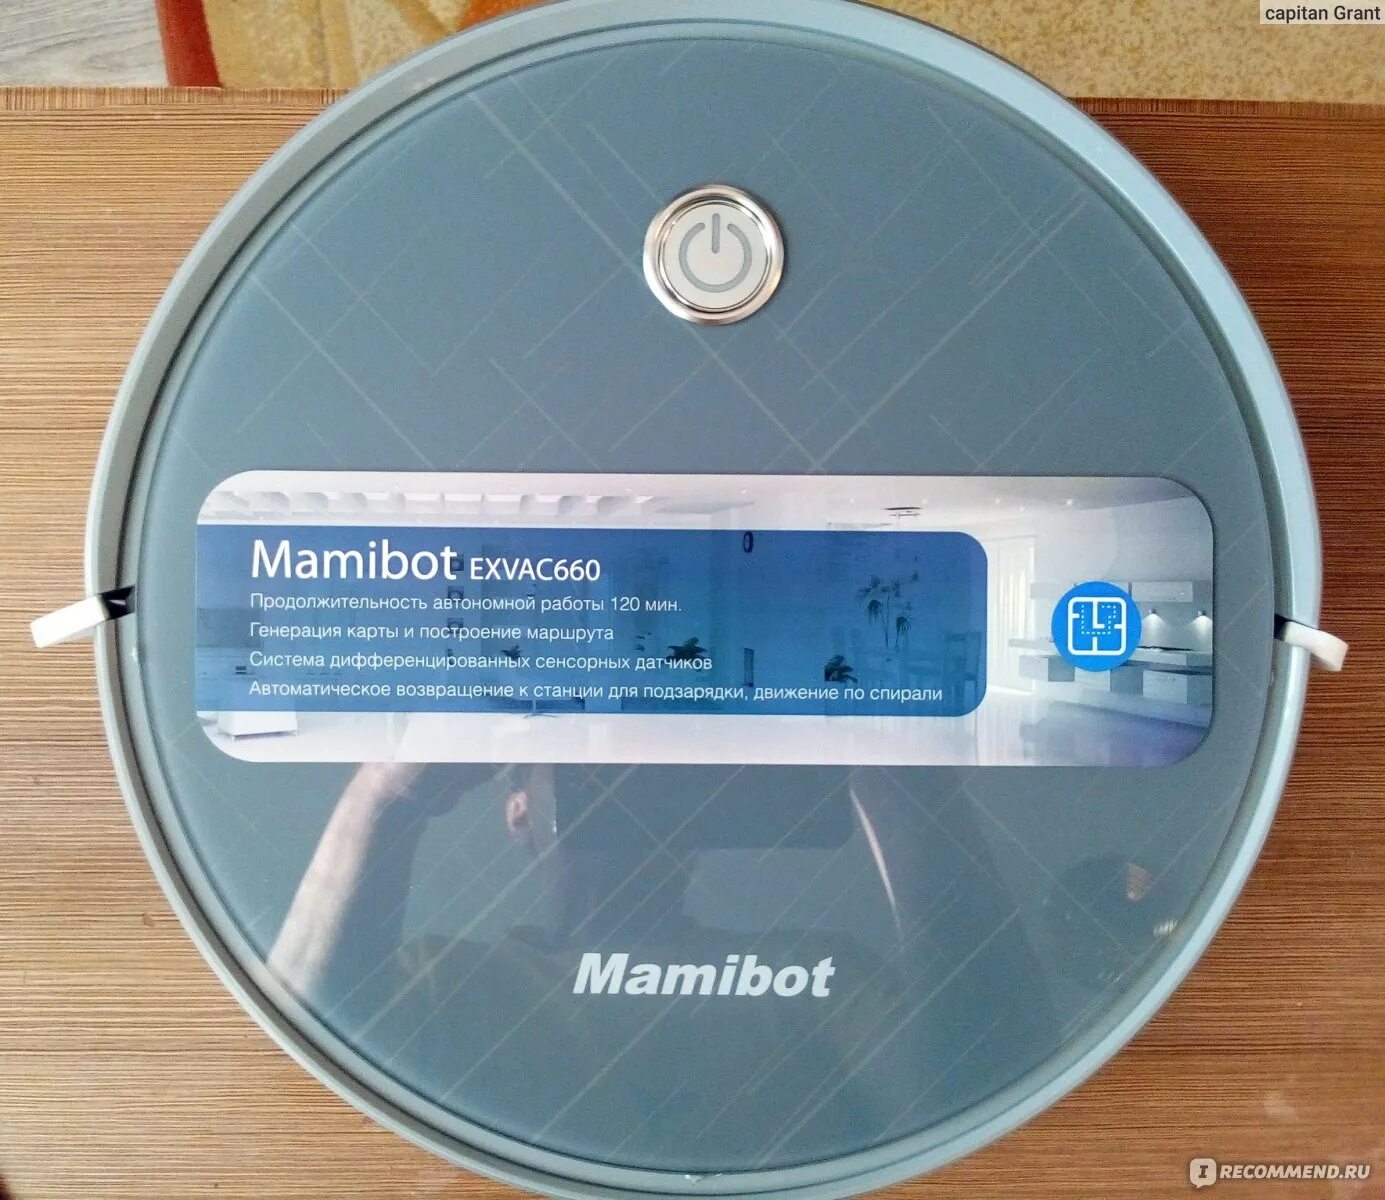 Mamibot exvac660. Пылесос Mamibot exvac660. МАМИБОТ робот пылесос 660. Пылесос Mamibot exvac660 инструкция. Mamibot exvac700